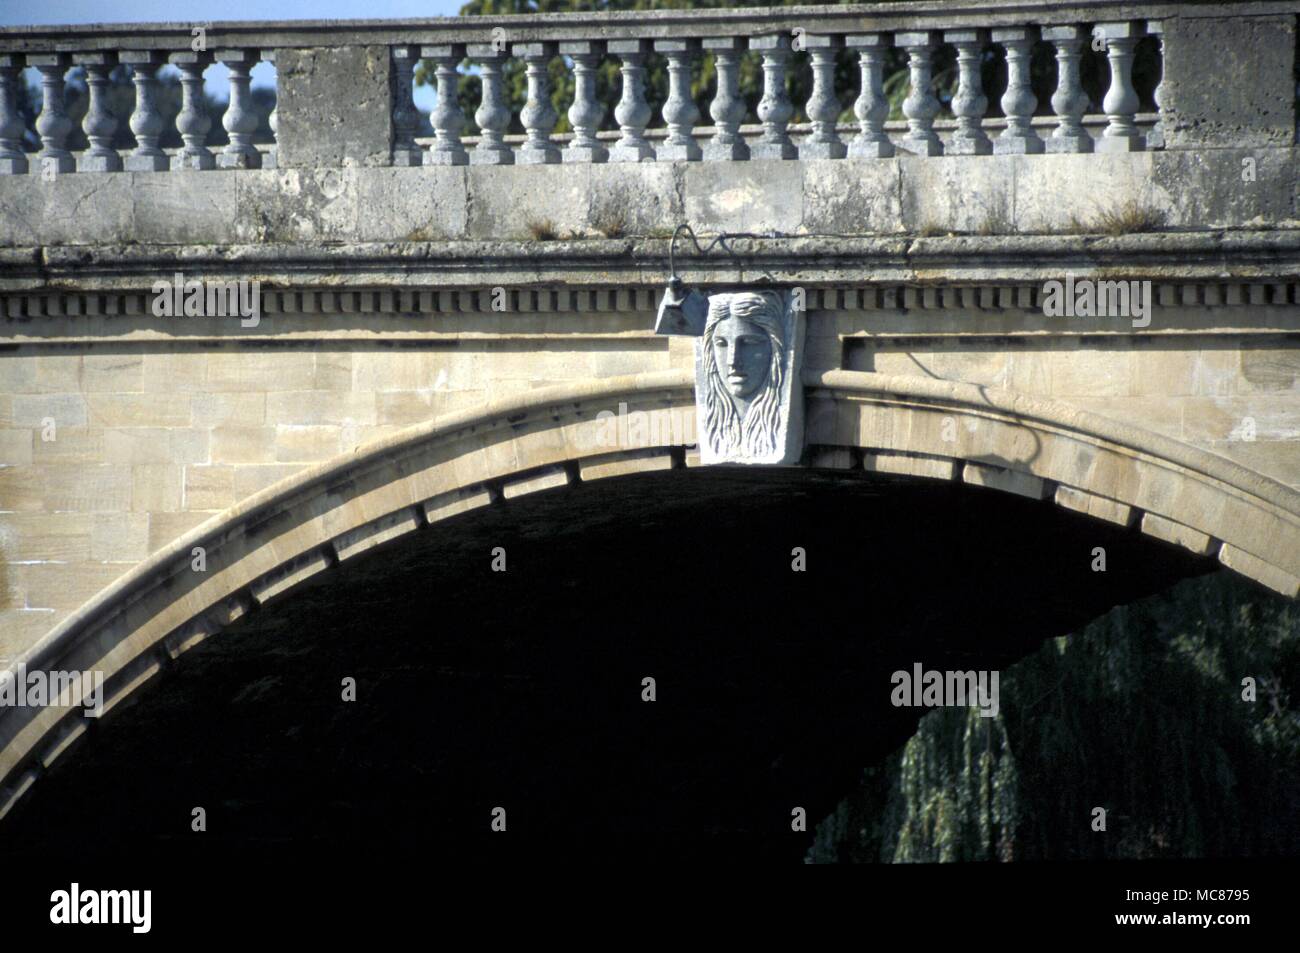 Mitologia egiziana un frammento di mitologia egiziana in Gran Bretagna. Henley Bridge, visto dal lato di Oxford, con la maschera centrale di Iside visibile. Foto Stock